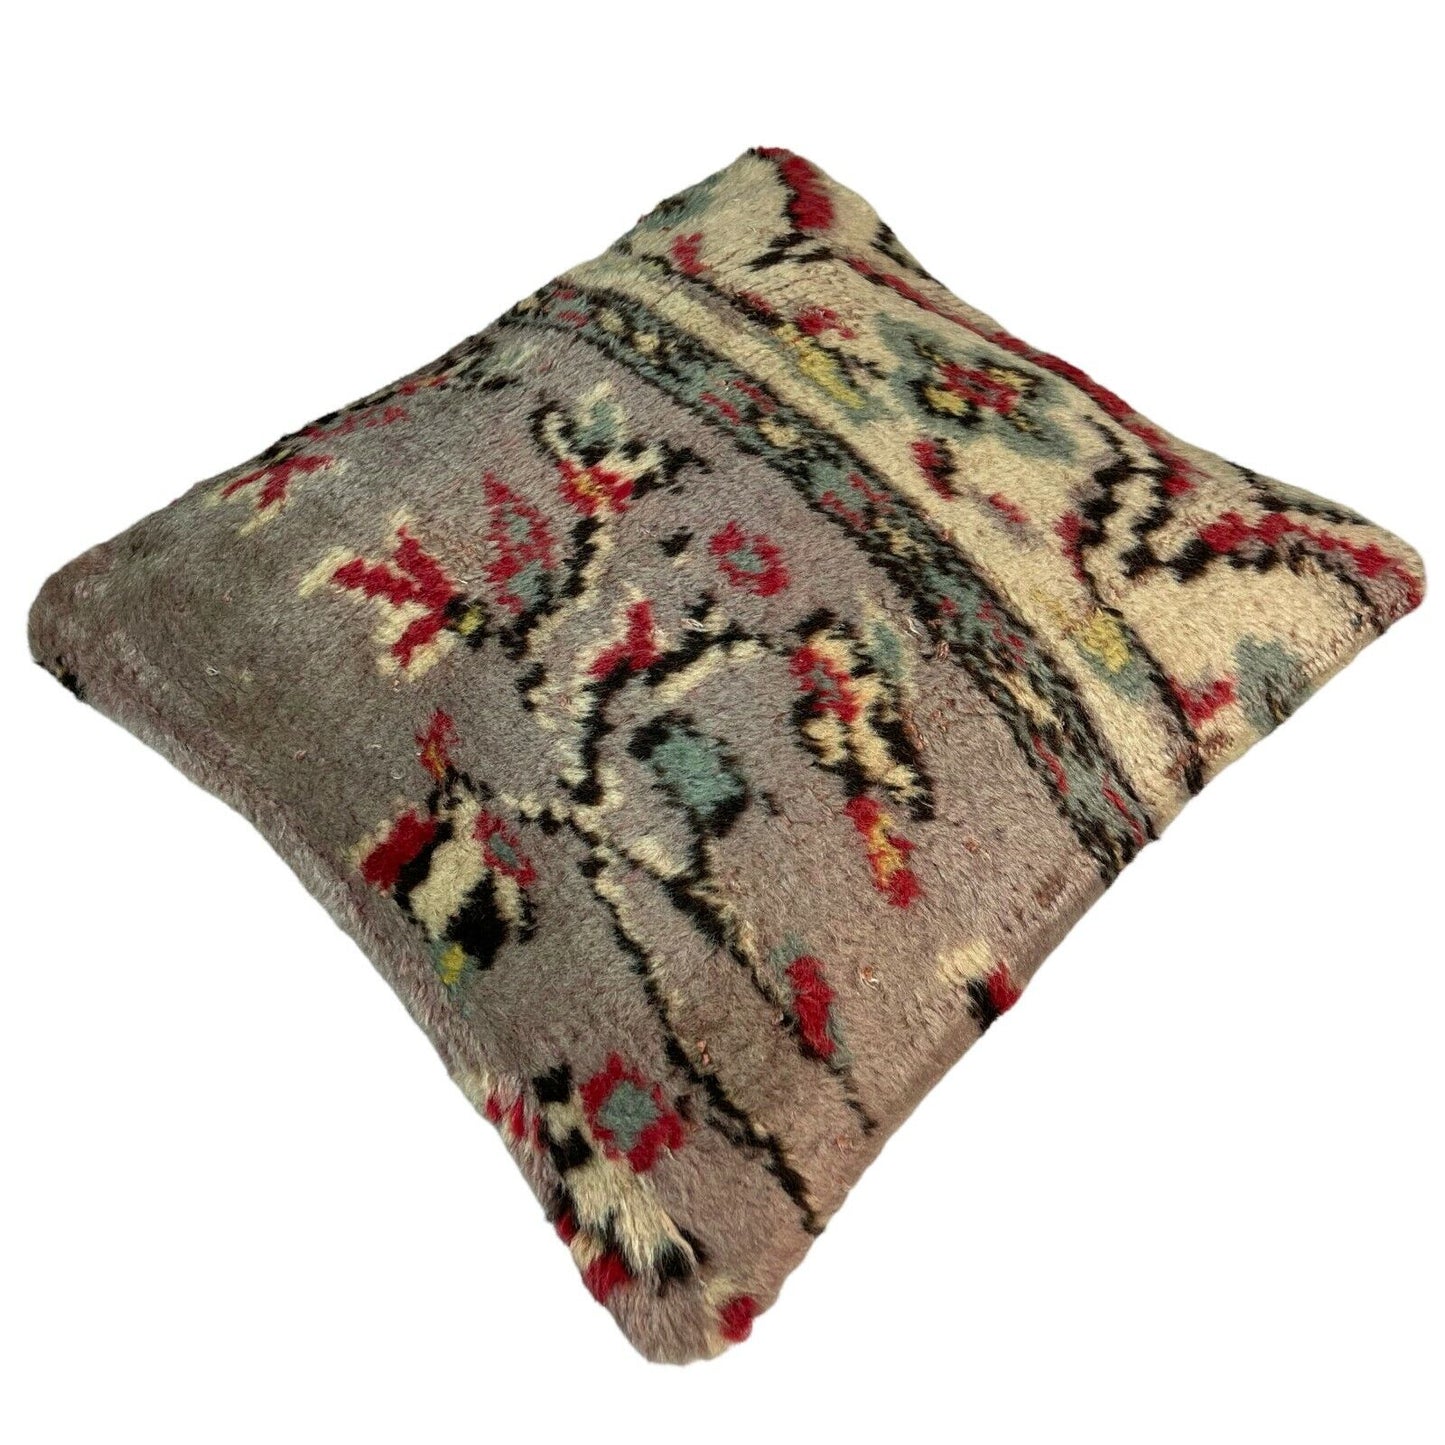 45 x 45 cm  , Vintage Turkish Cushion Cover ,  Vintage Handgemachte Kissenbezug